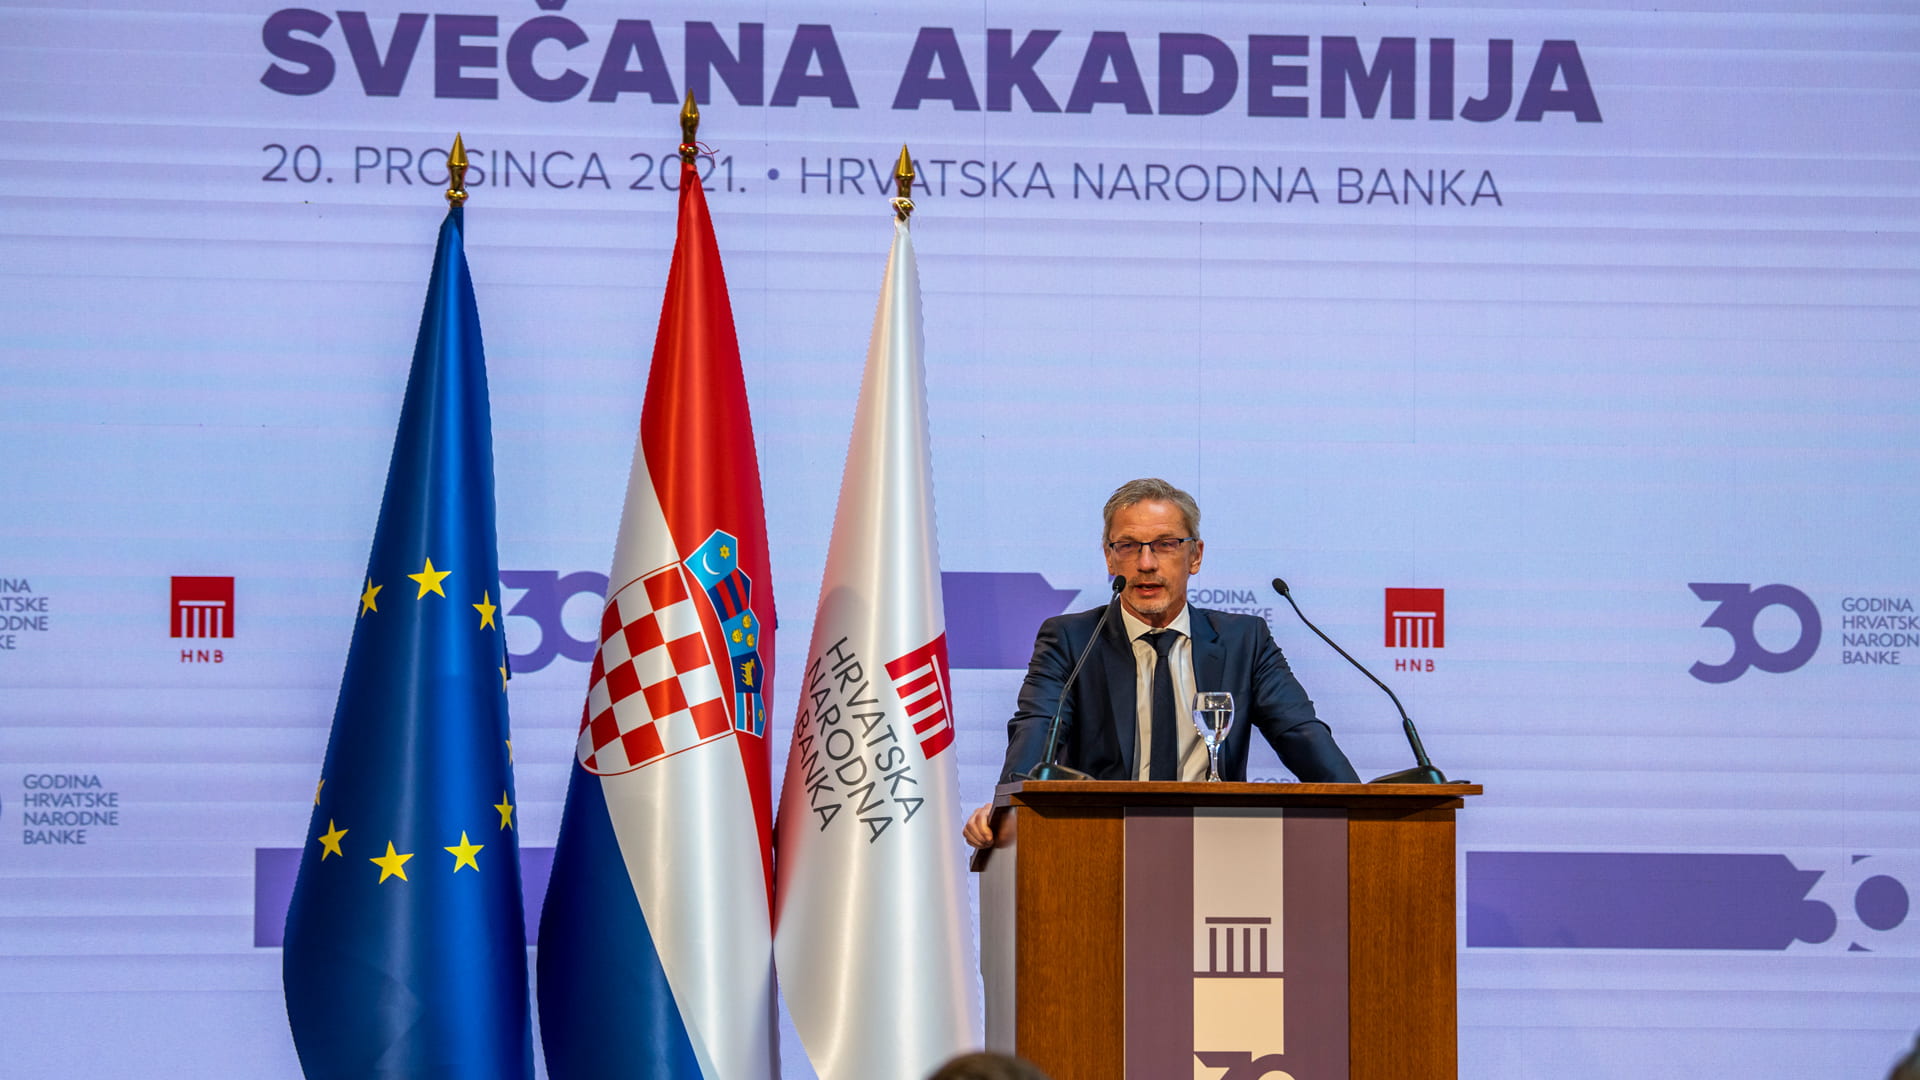 Održana Svečana akademija u povodu 30 godina hrvatske središnje banke